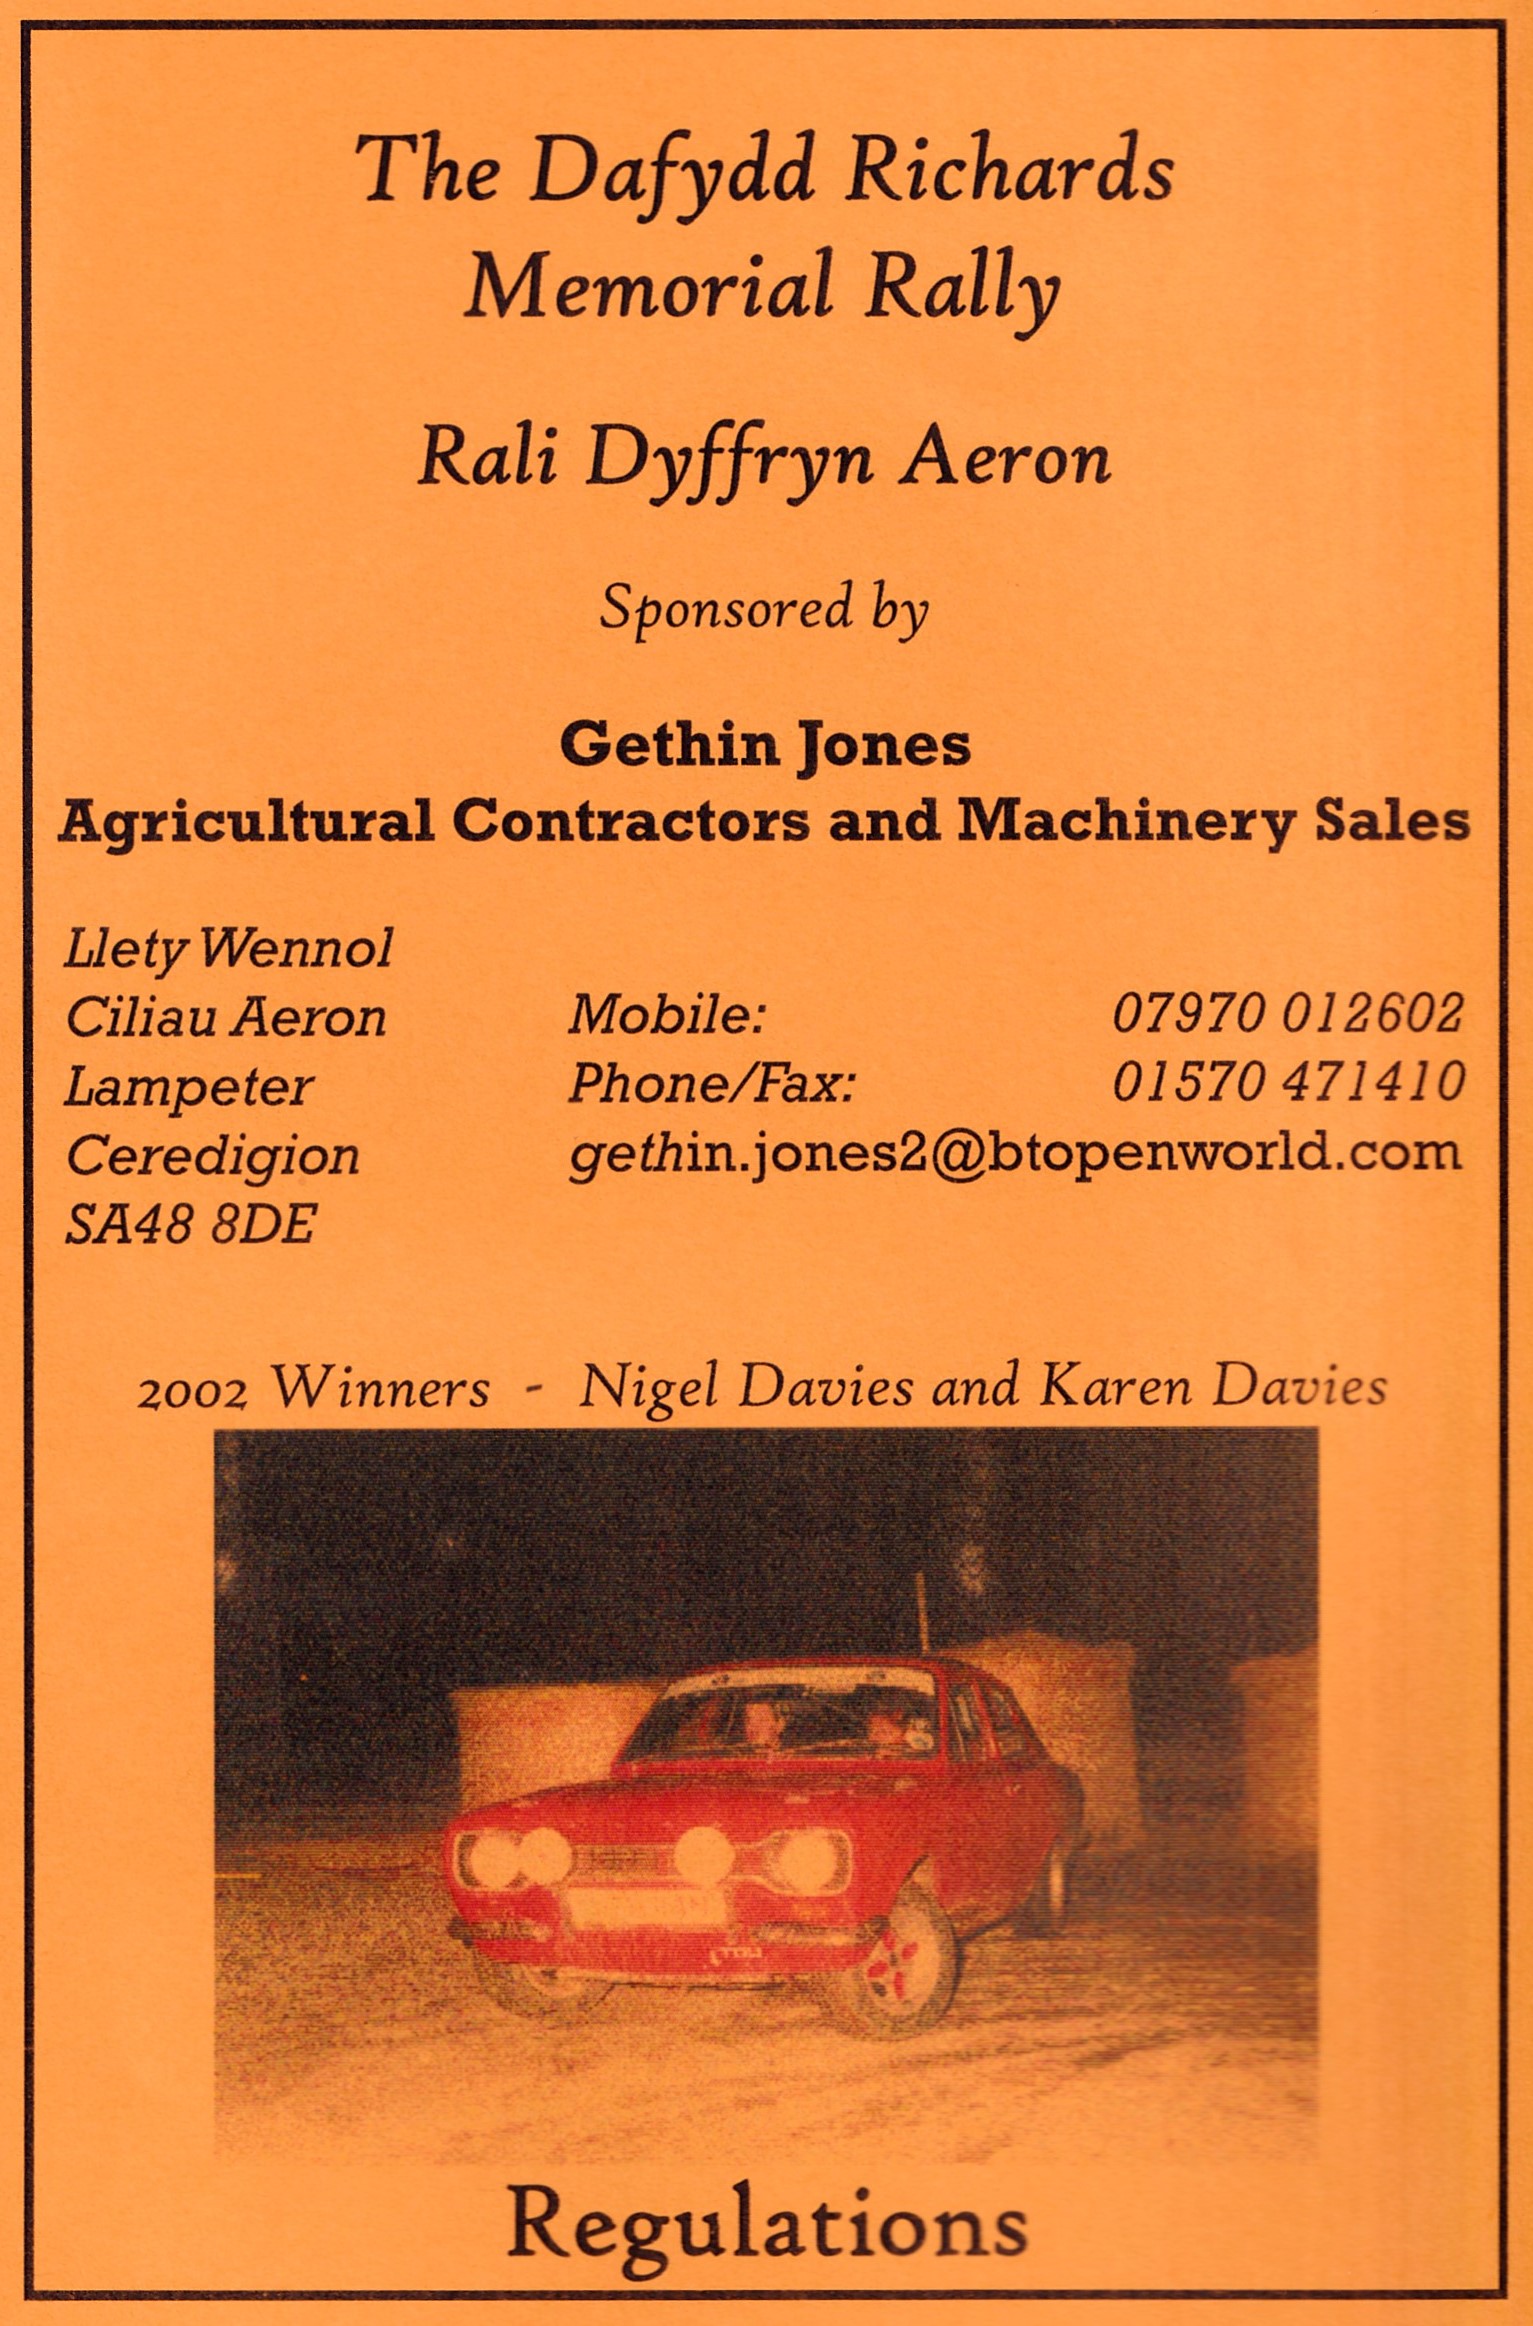 Rali Dyffryn Aeron 2003